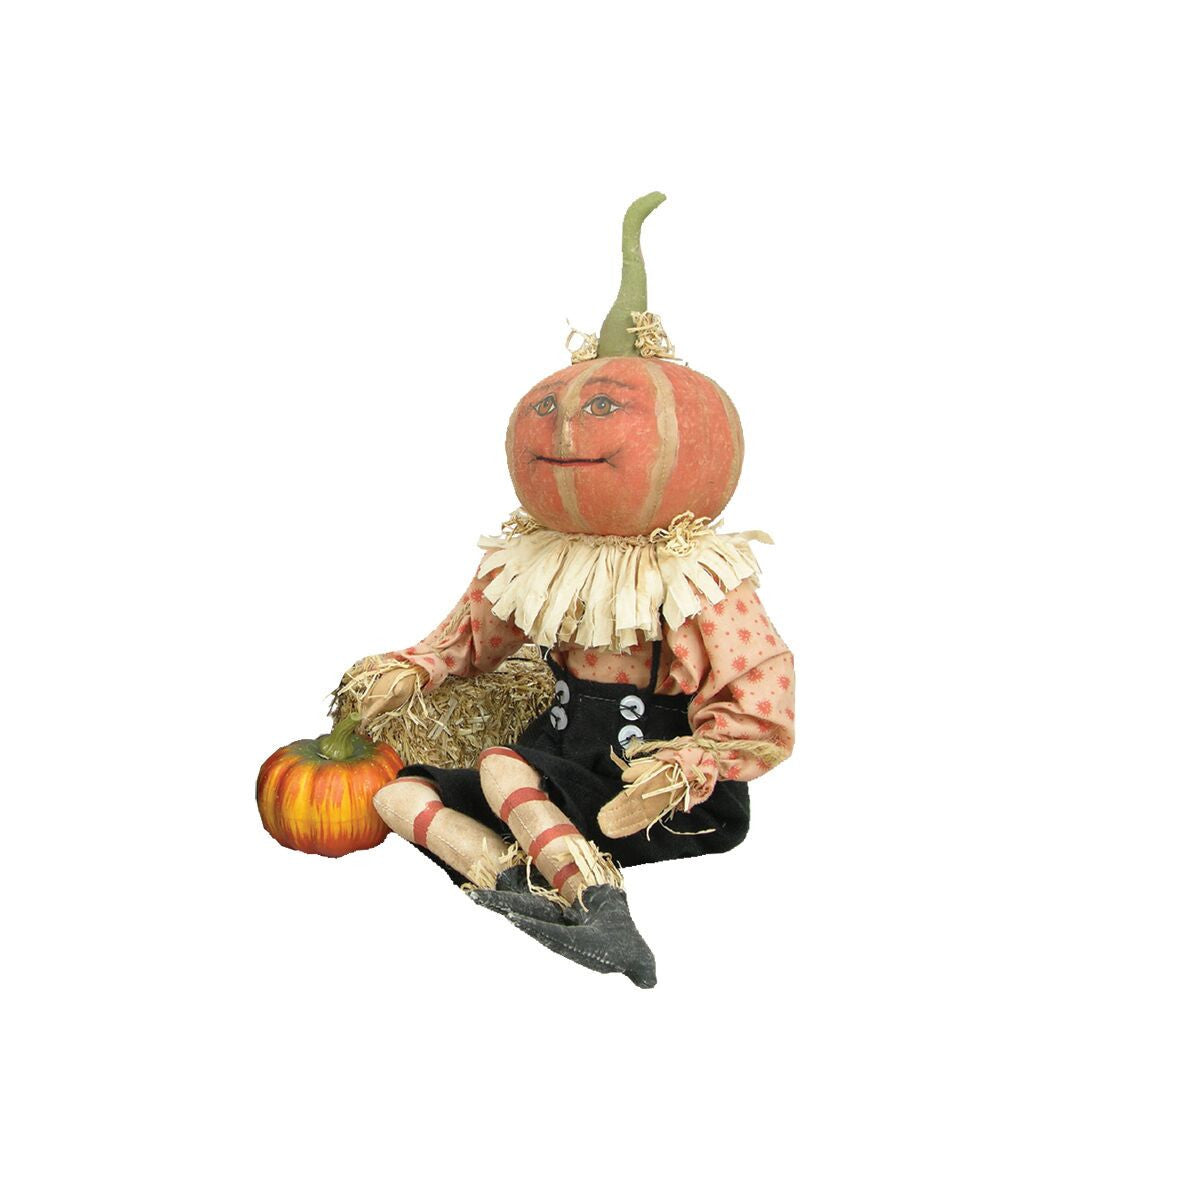 Pierre Pumpkin Head Doll by Joe Spencer Halloween